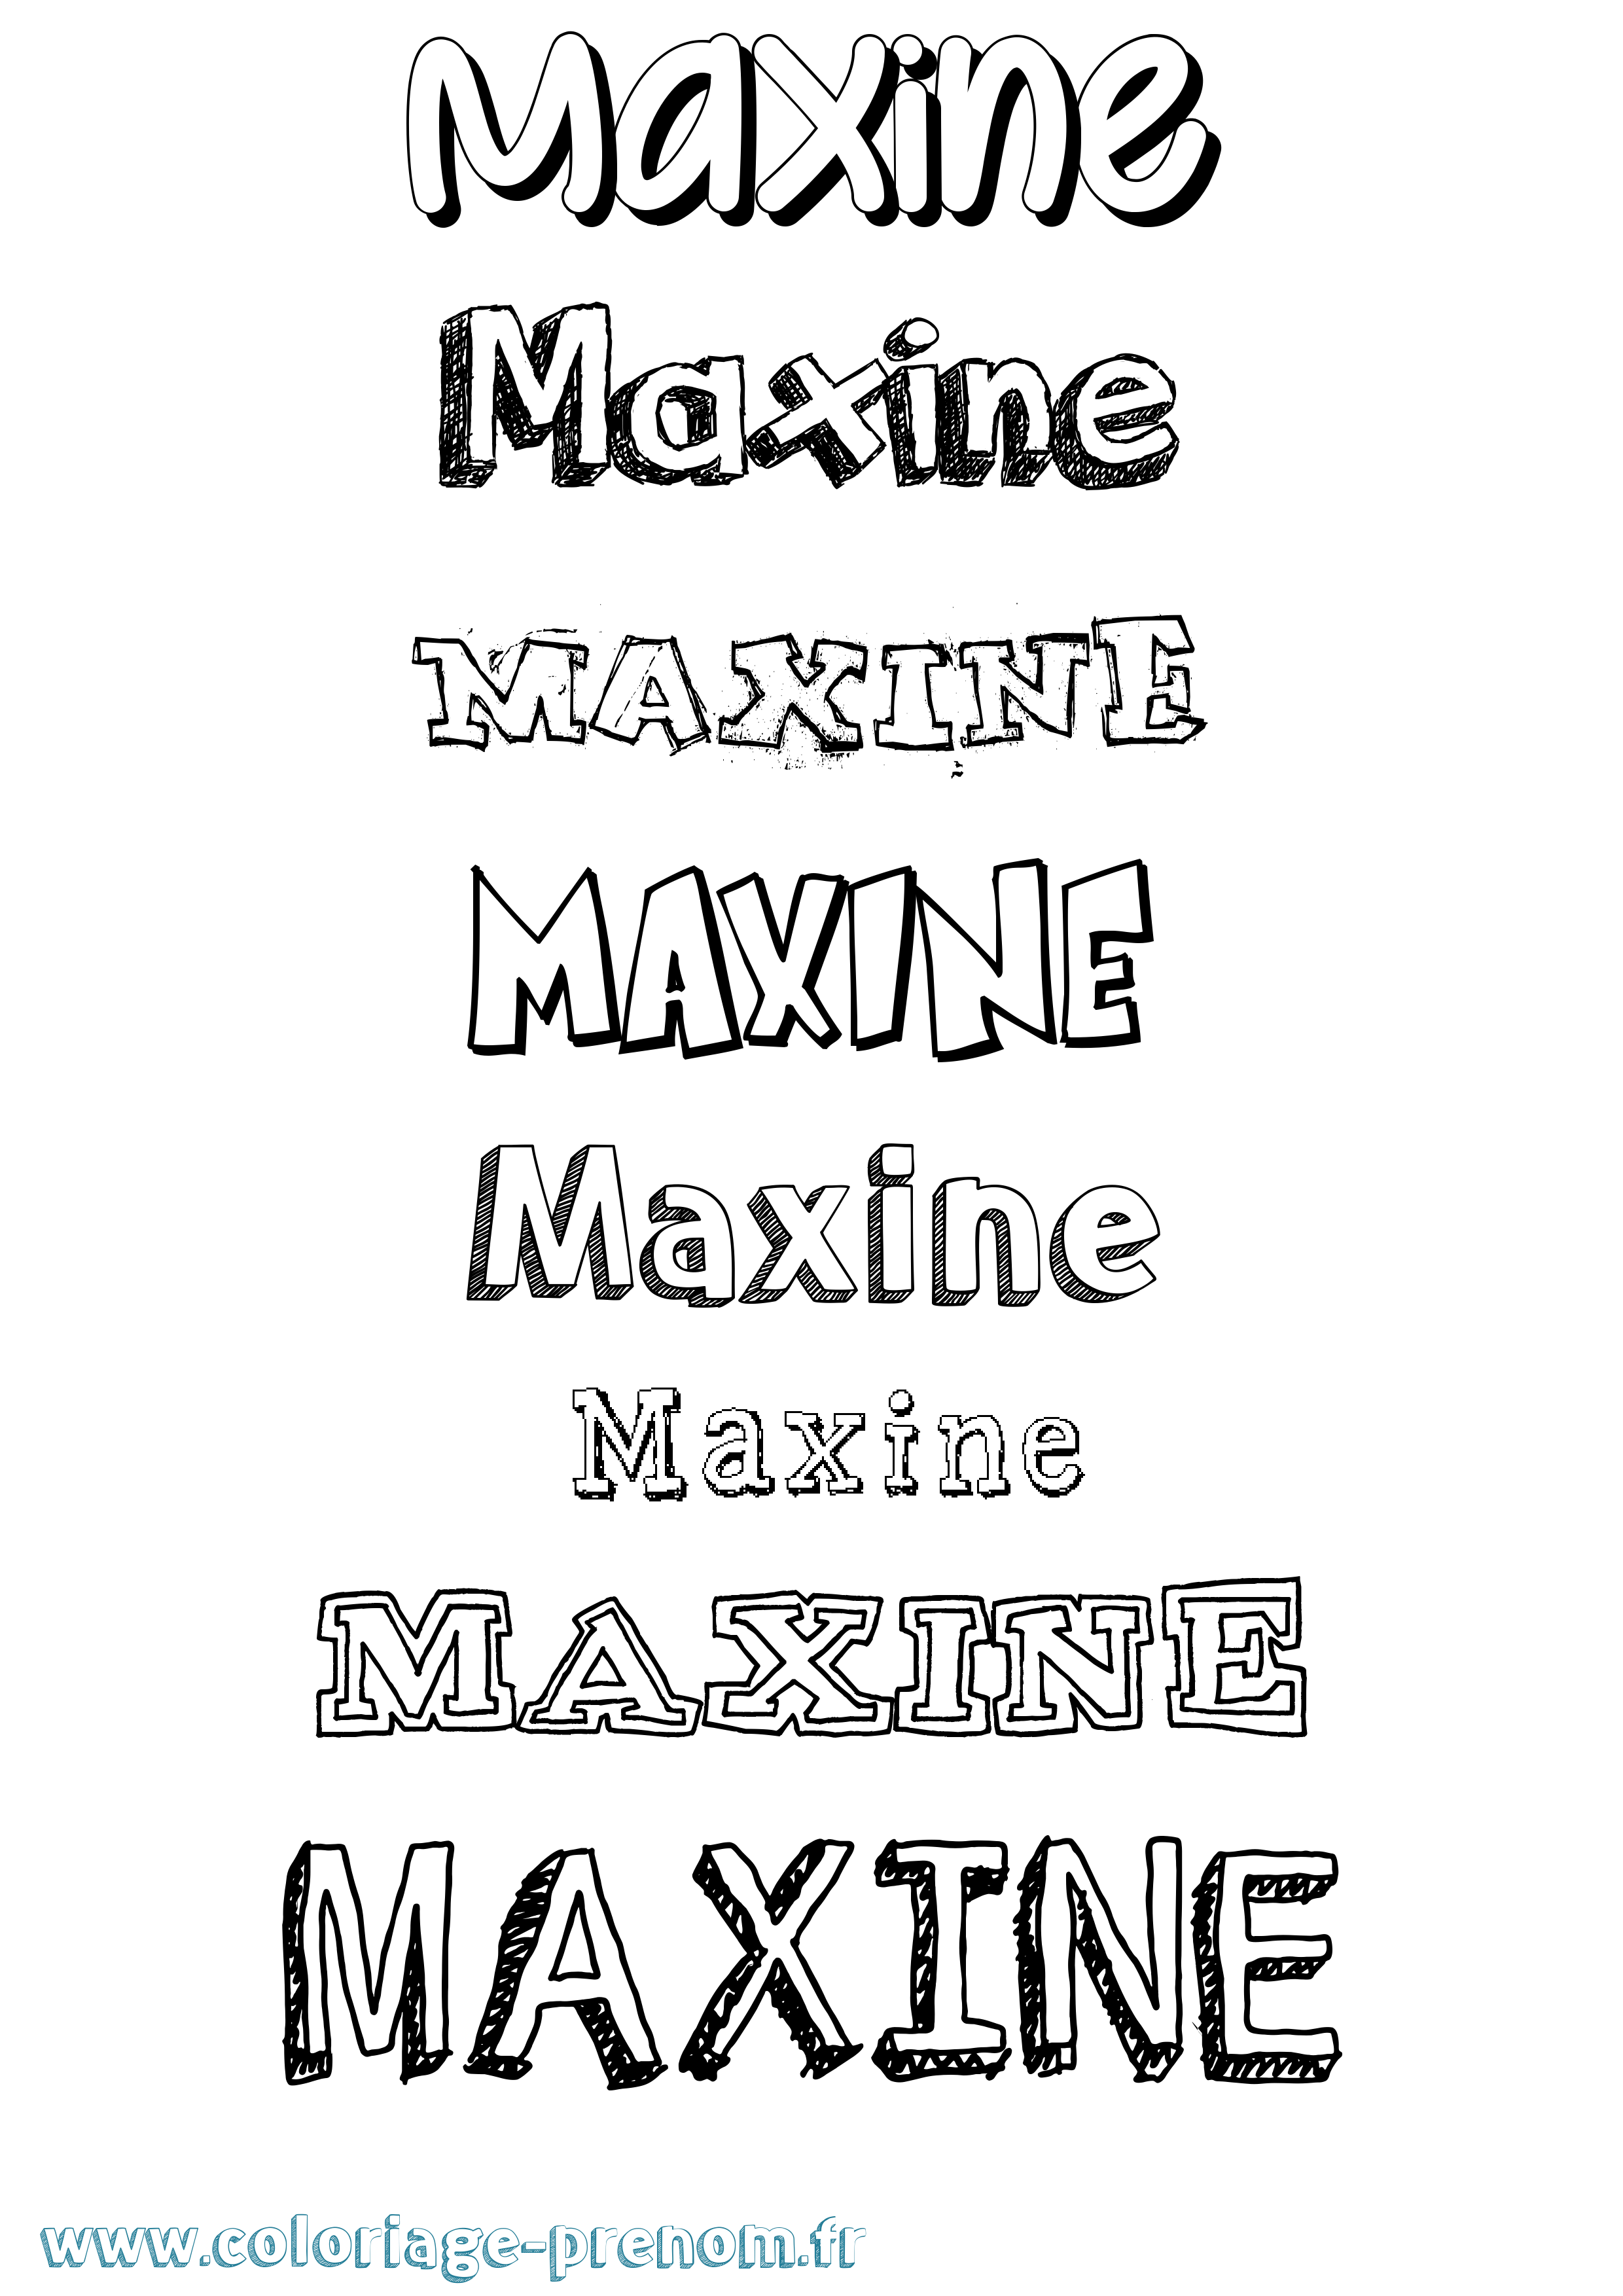 Coloriage prénom Maxine Dessiné